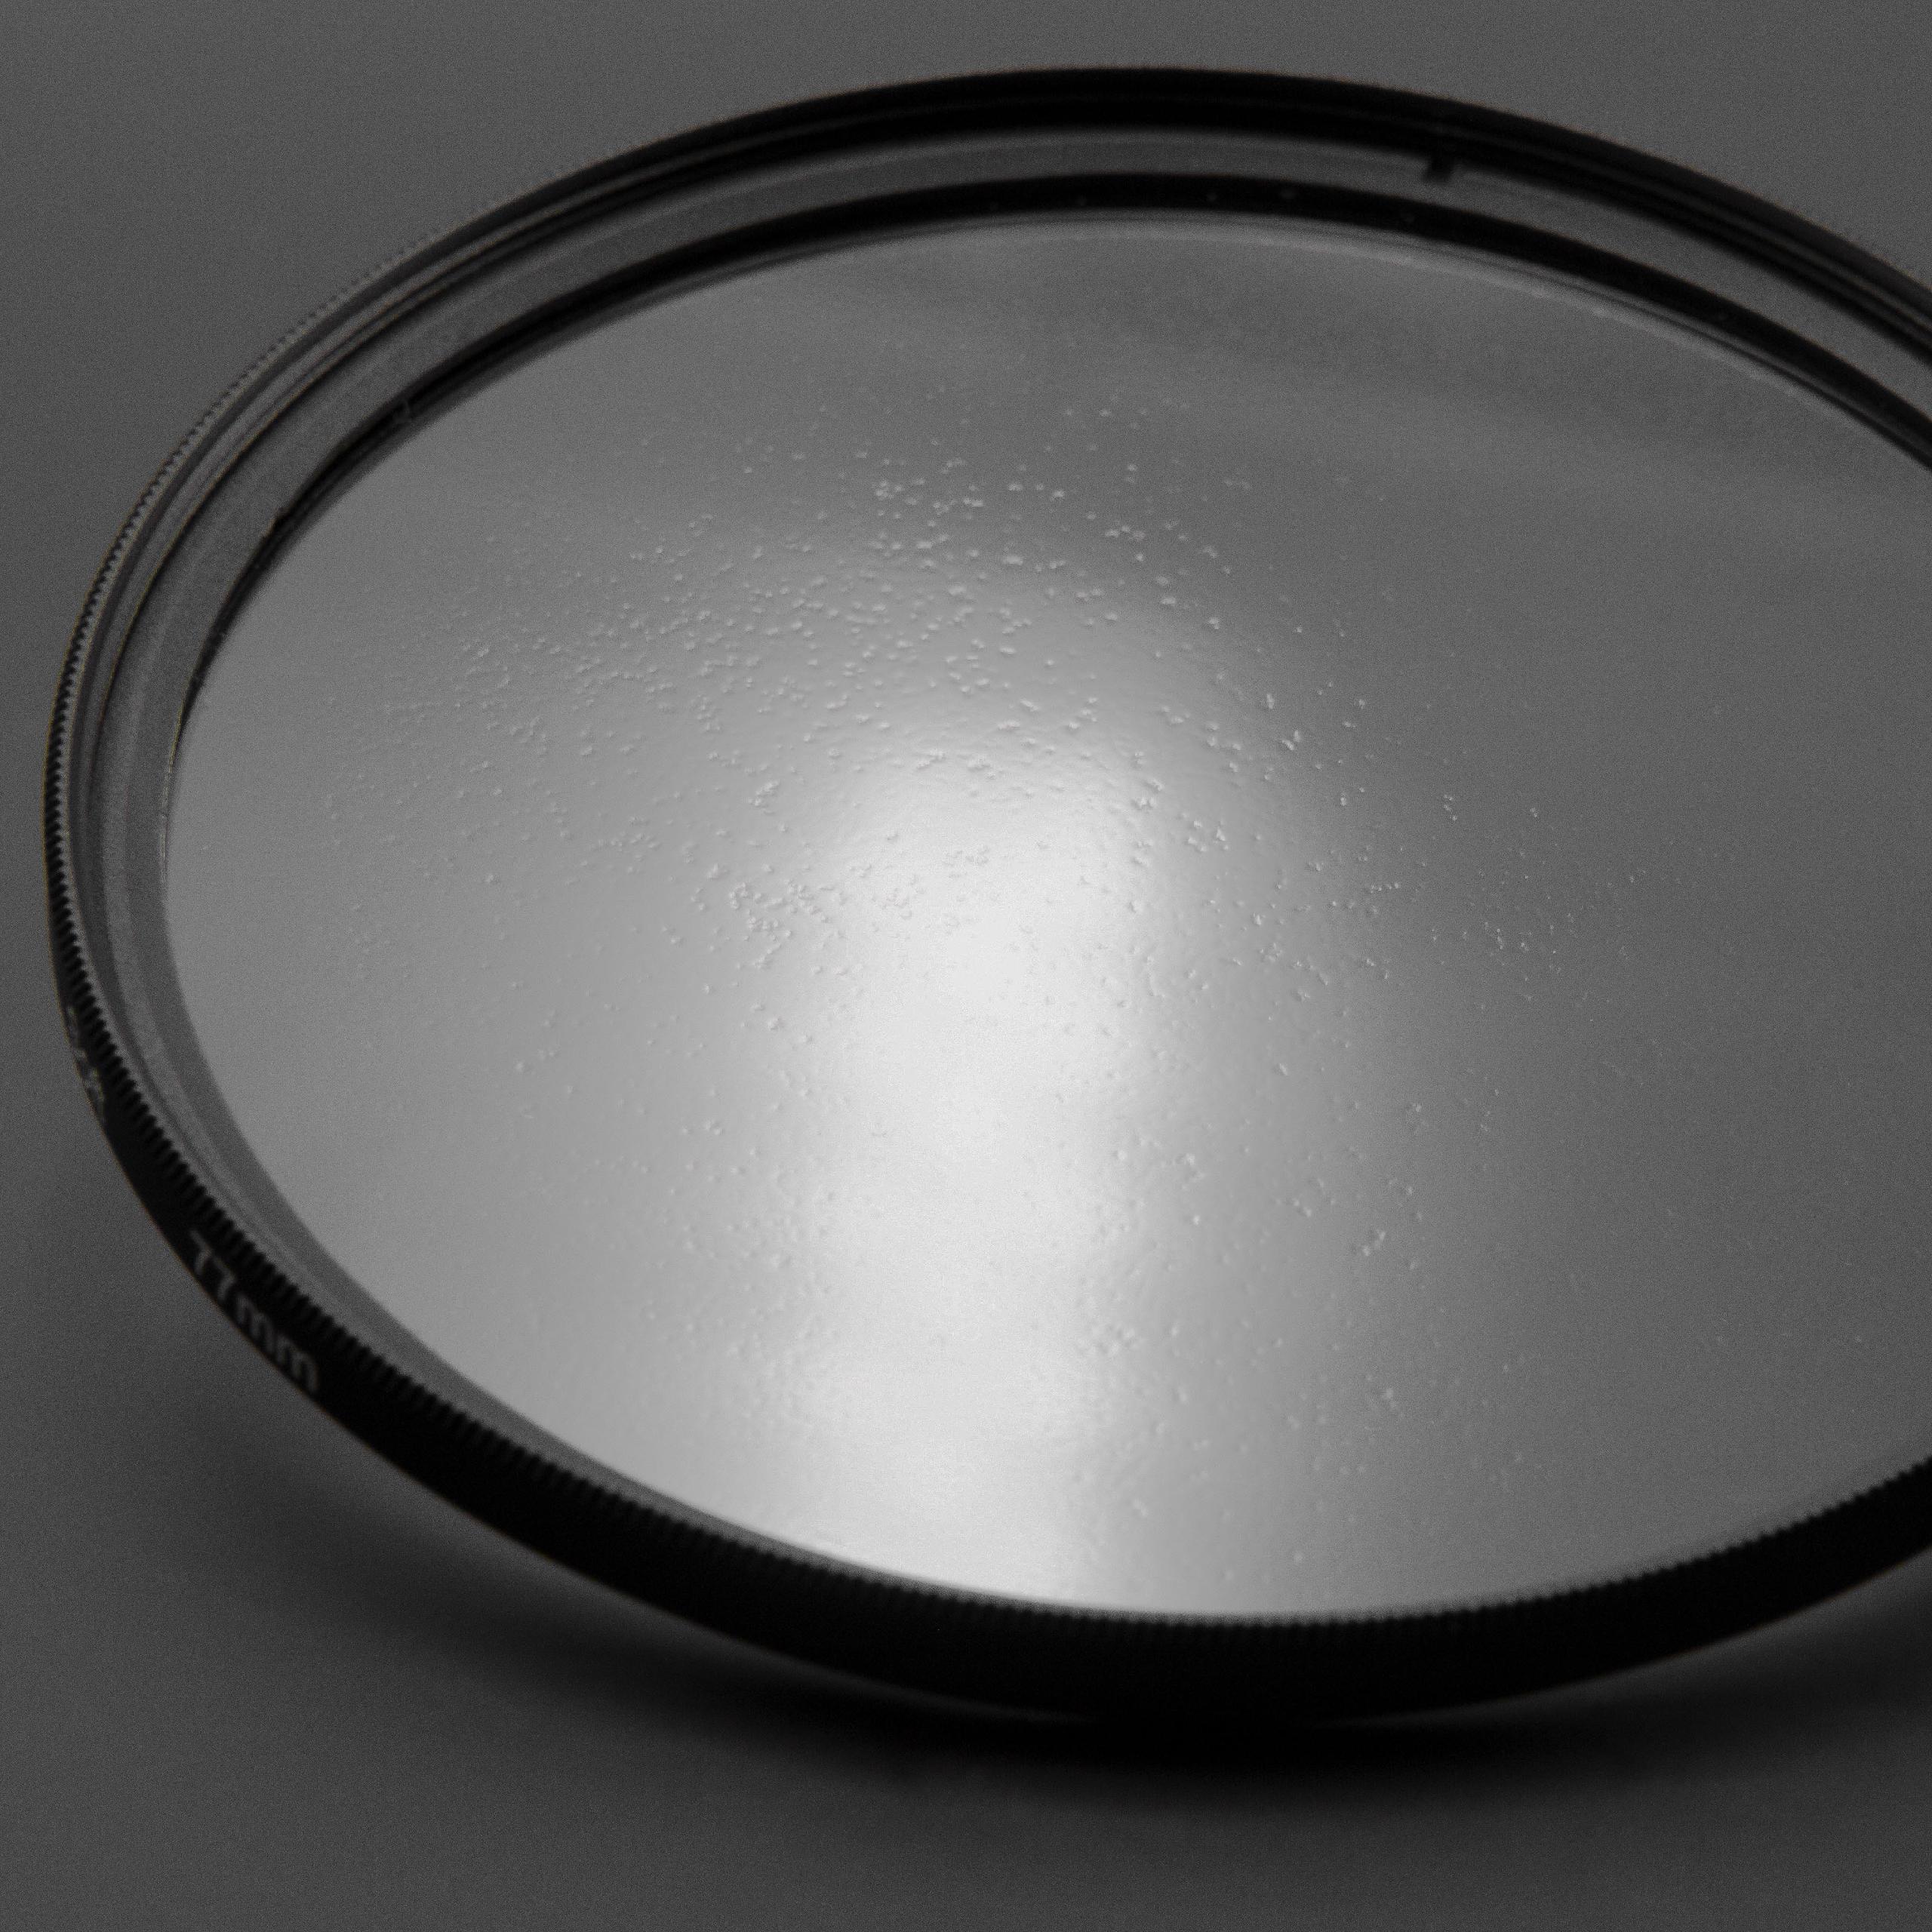 Filtr dyfuzyjny 52mm na obiektyw do różnych aparatów - filtr soft focus